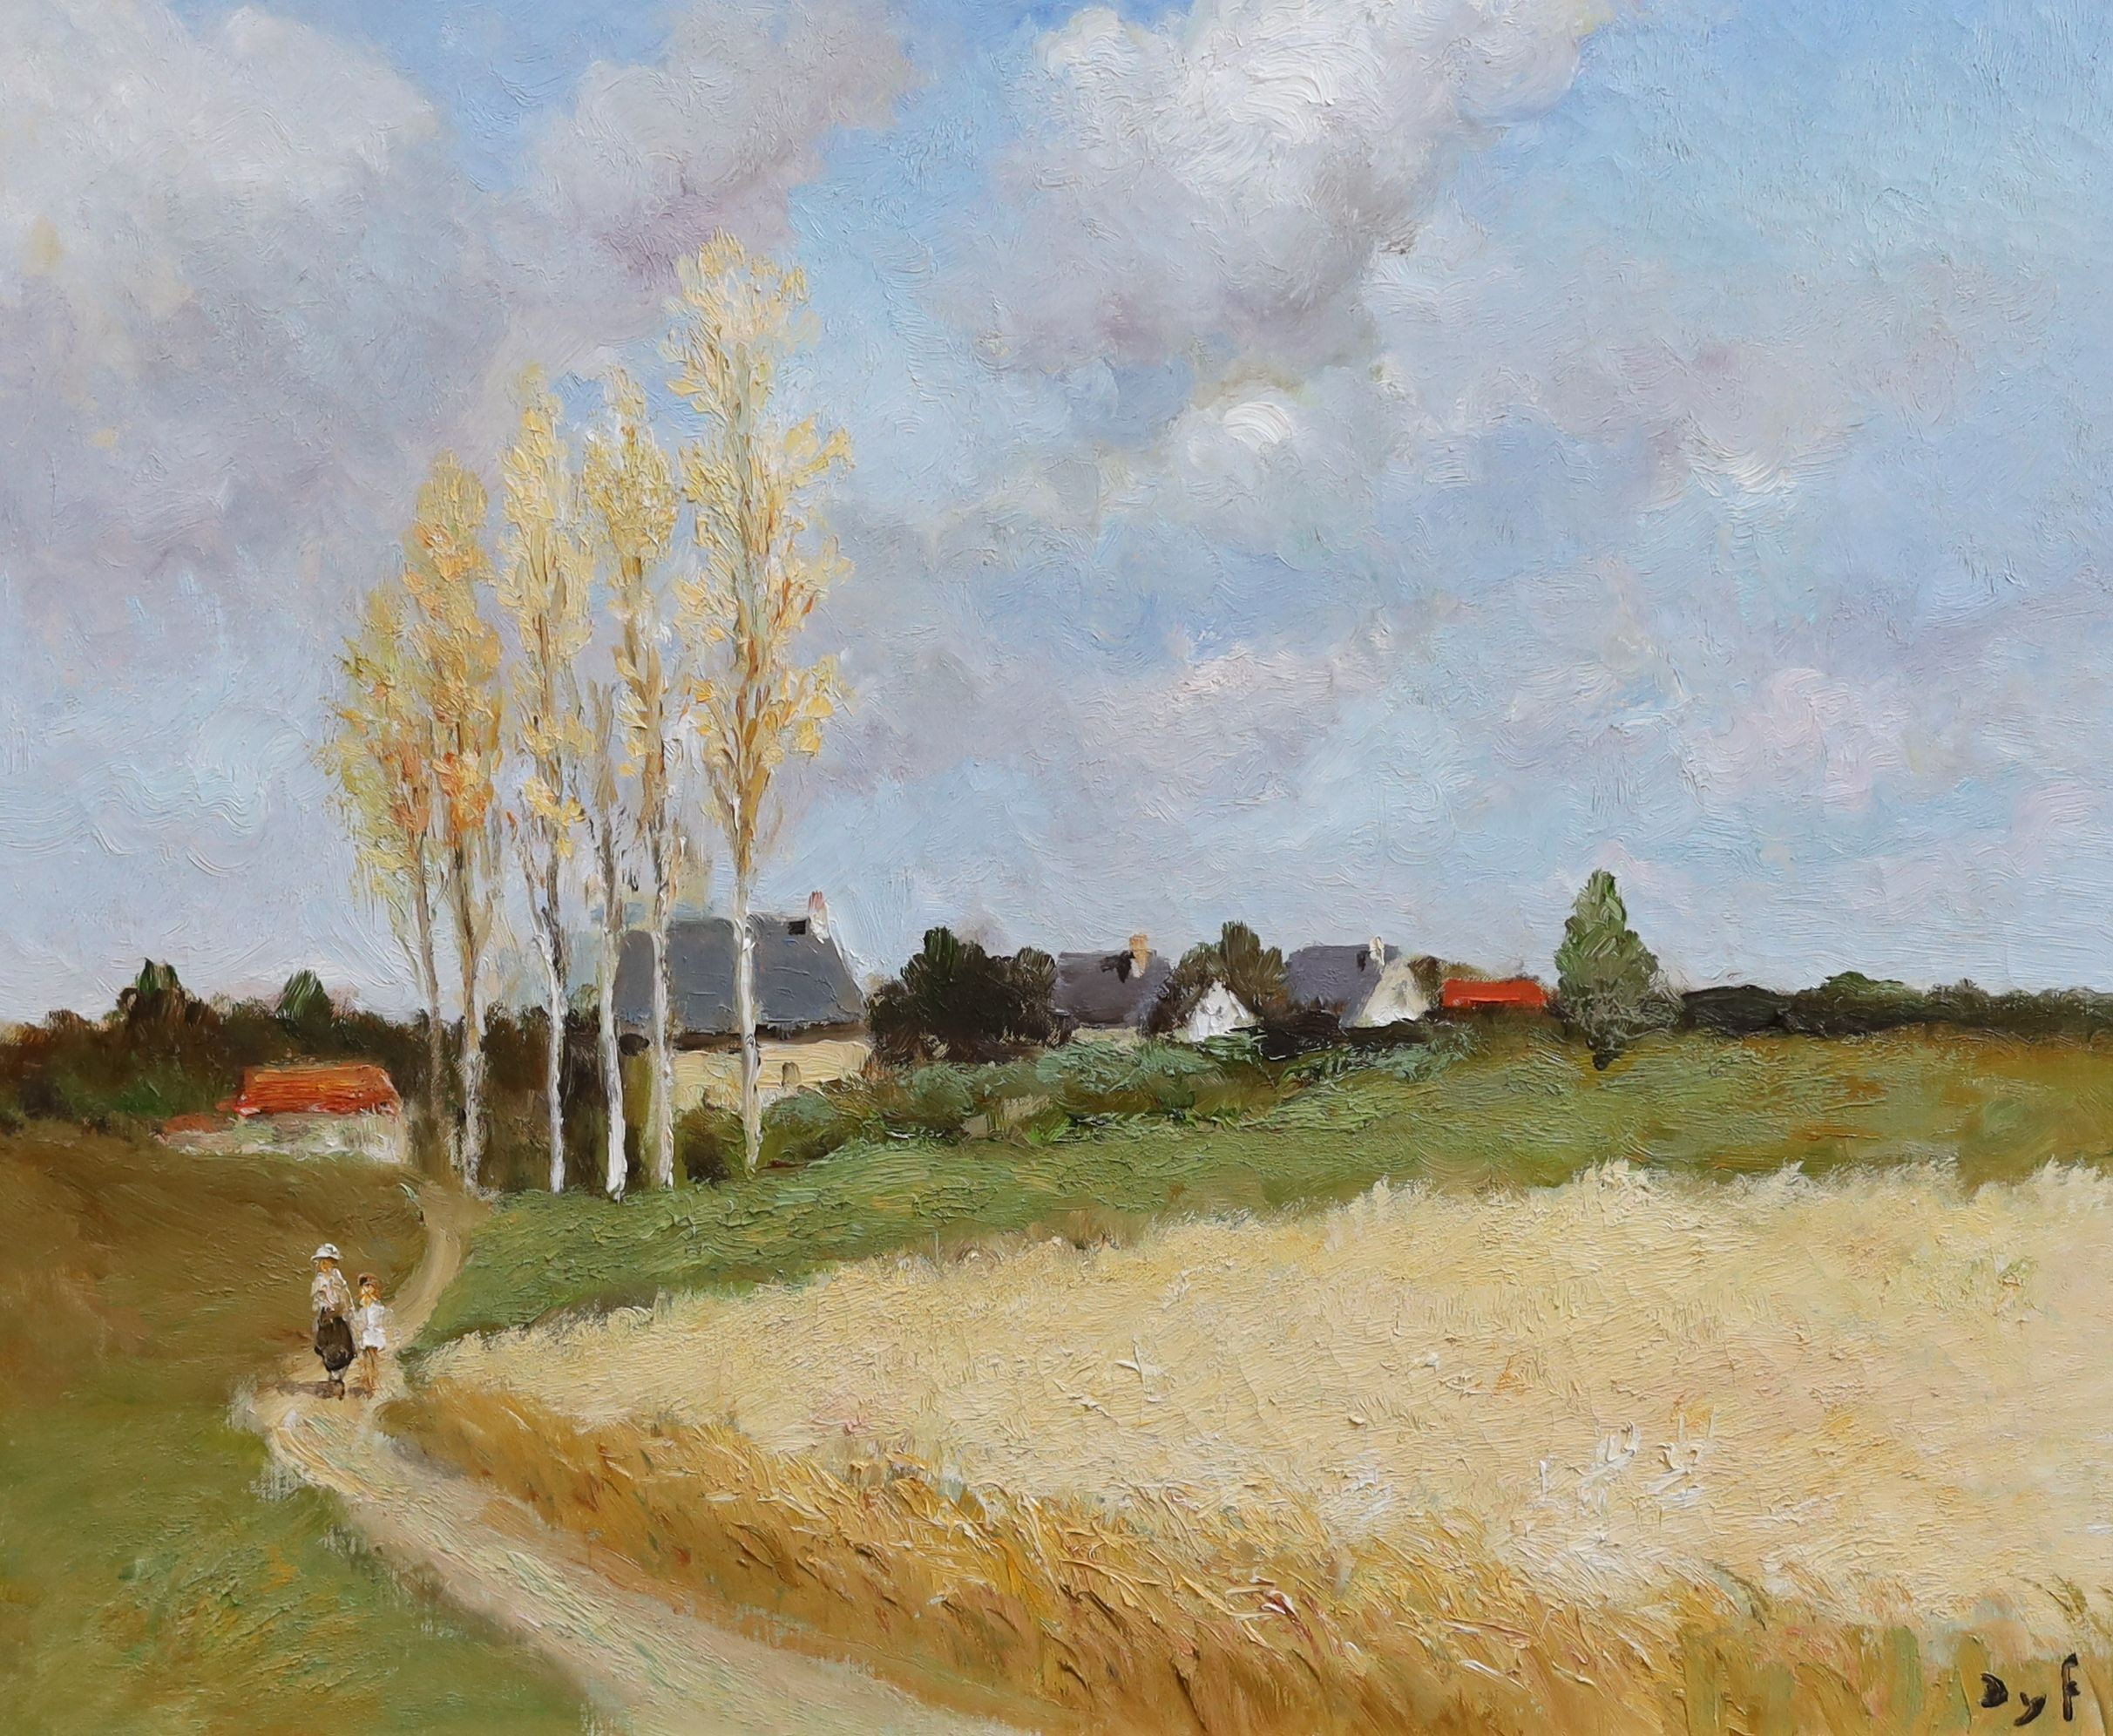 Marcel Dyf (French, 1899-1985), Tour au villages, oil on canvas, 44 x 54cm